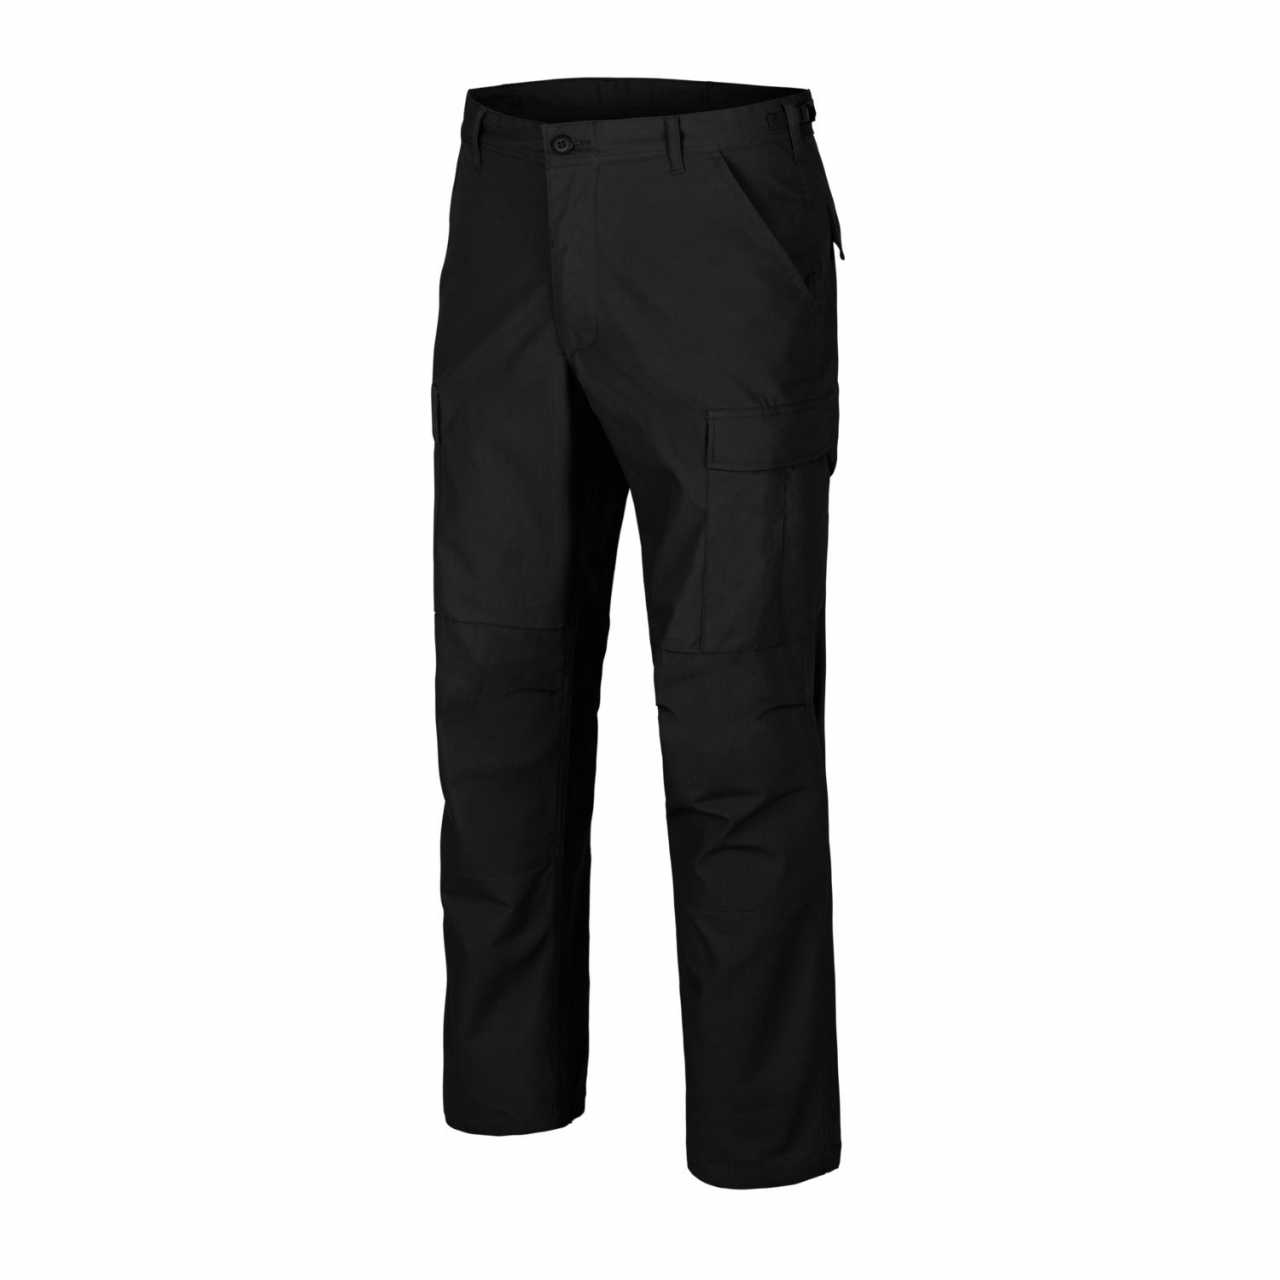 Kalhoty Helikon BDU Pants Poly Ripstop - černé, XL Long